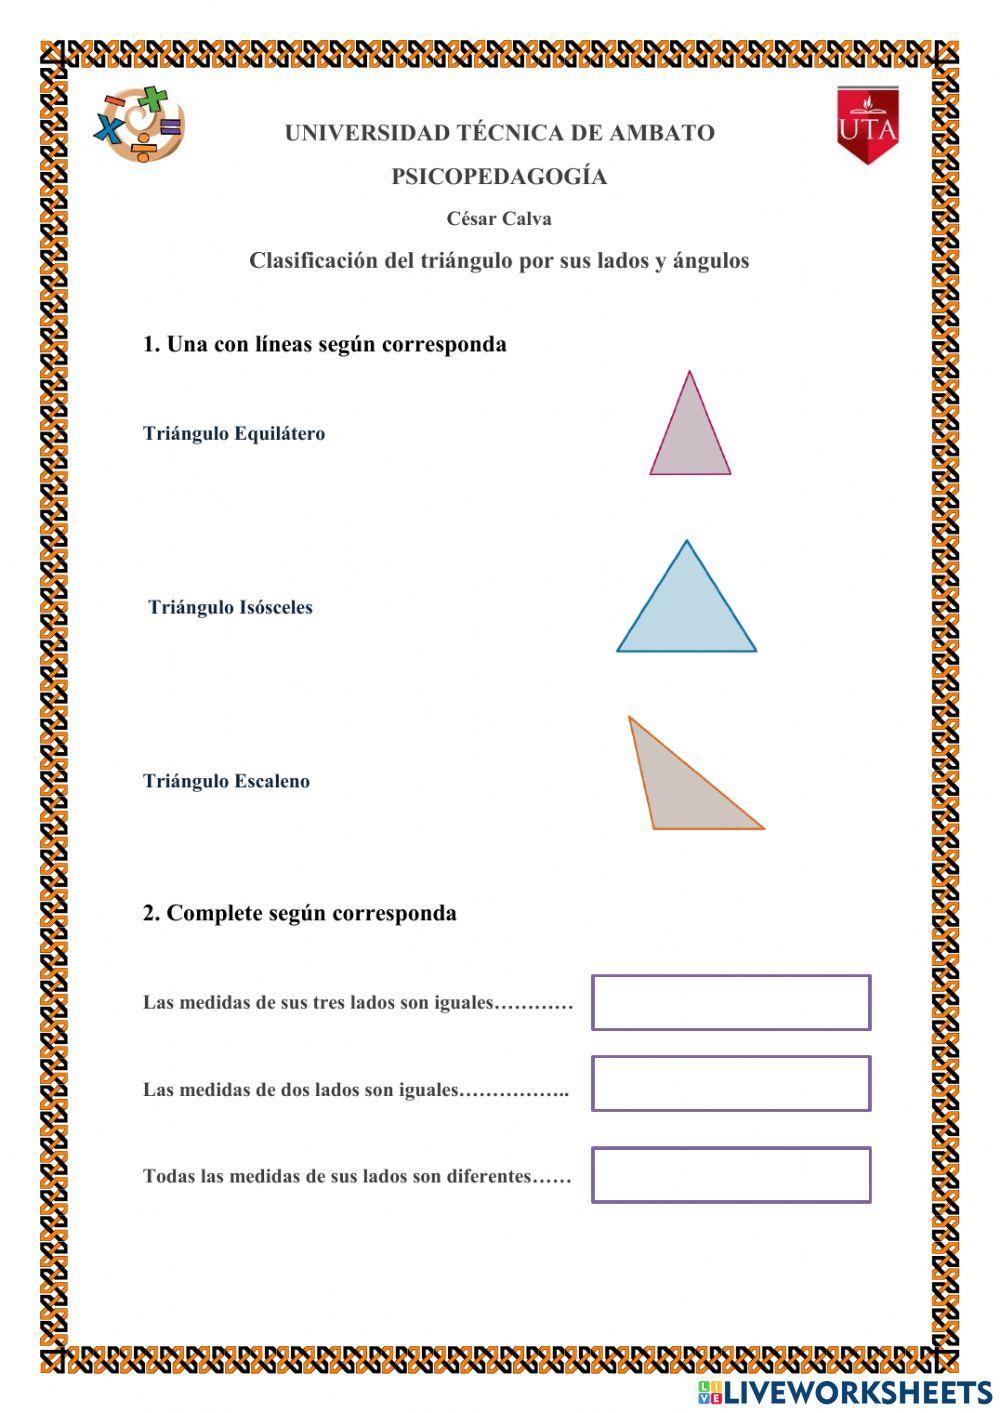 Clasificación del triángulo por sus lados y ángulos